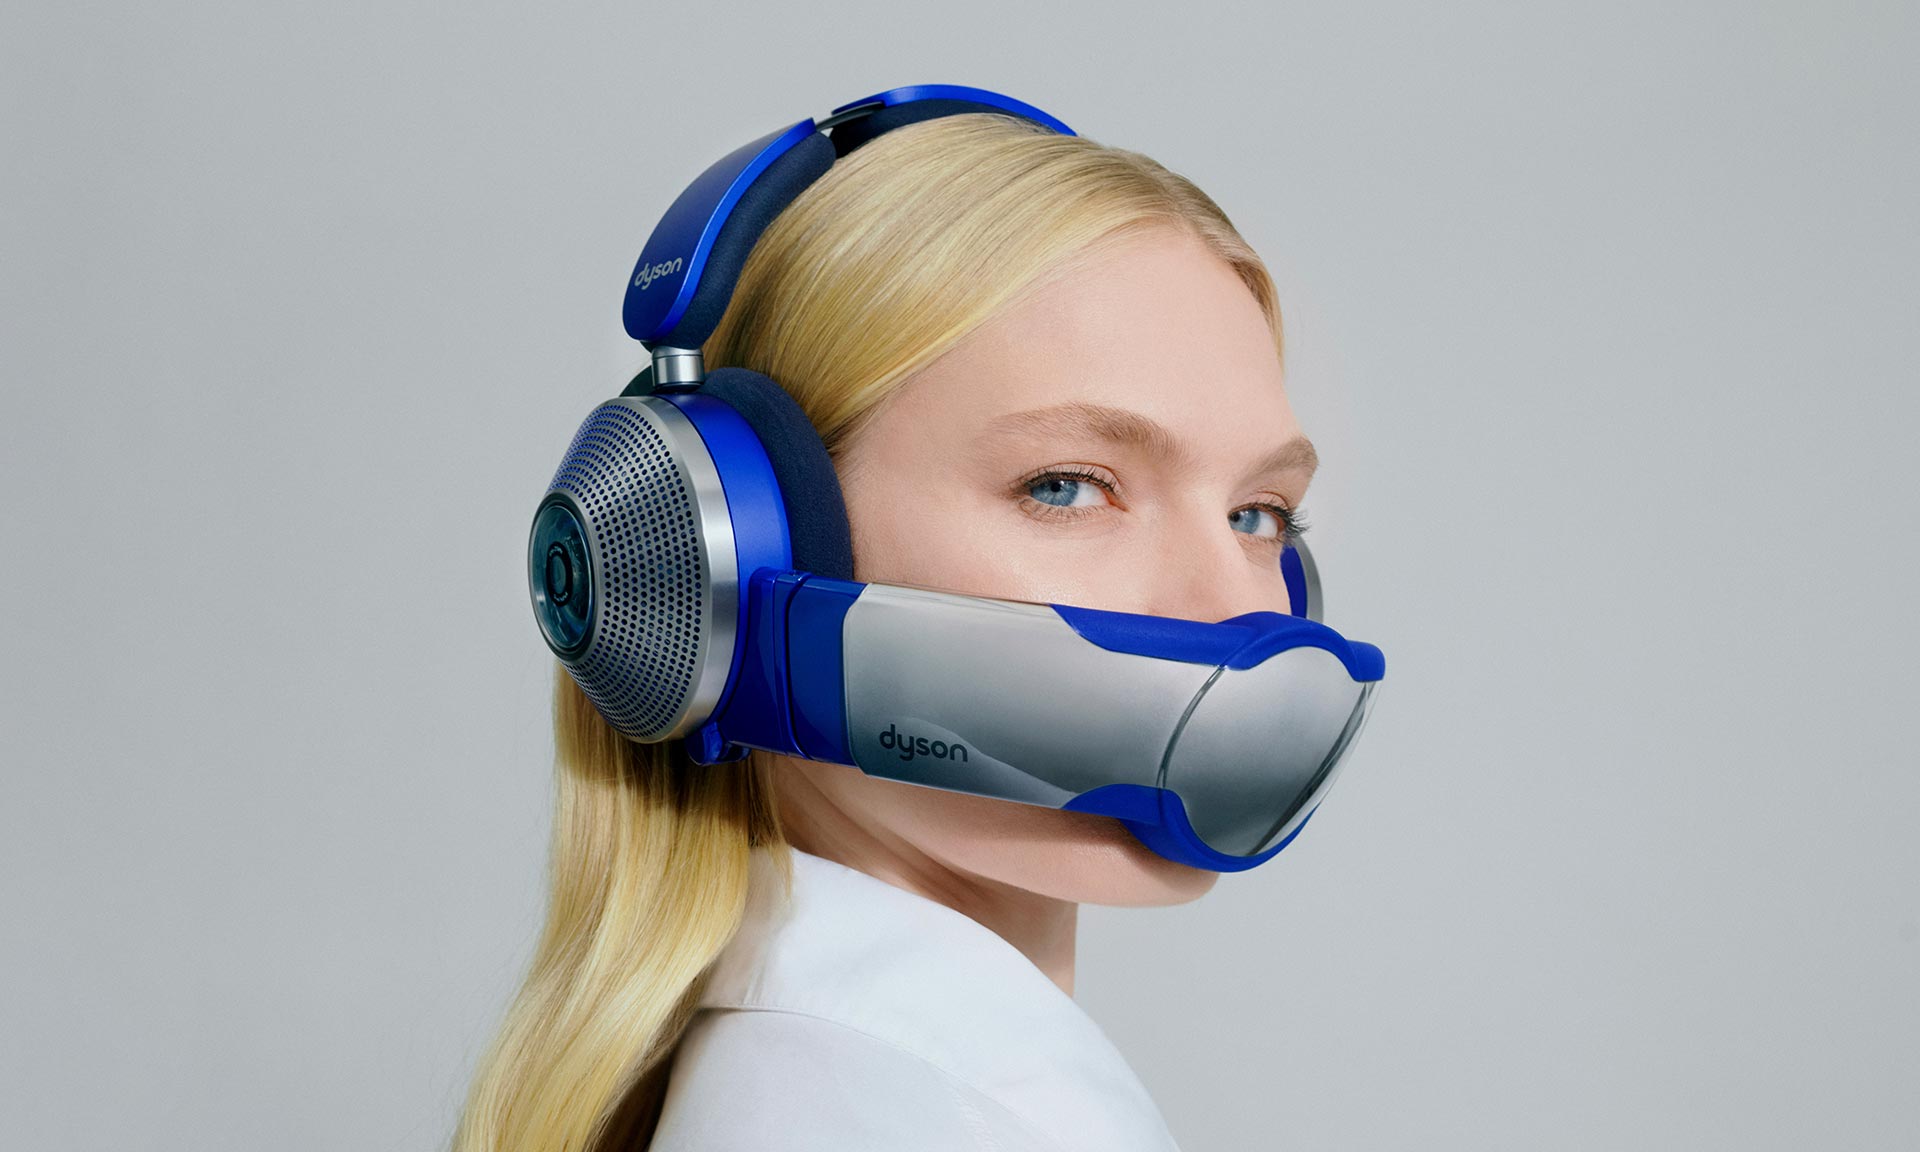 Dyson začne prodávat unikátní bezdrátová sluchátka Zone schopná navíc čistit vzduch